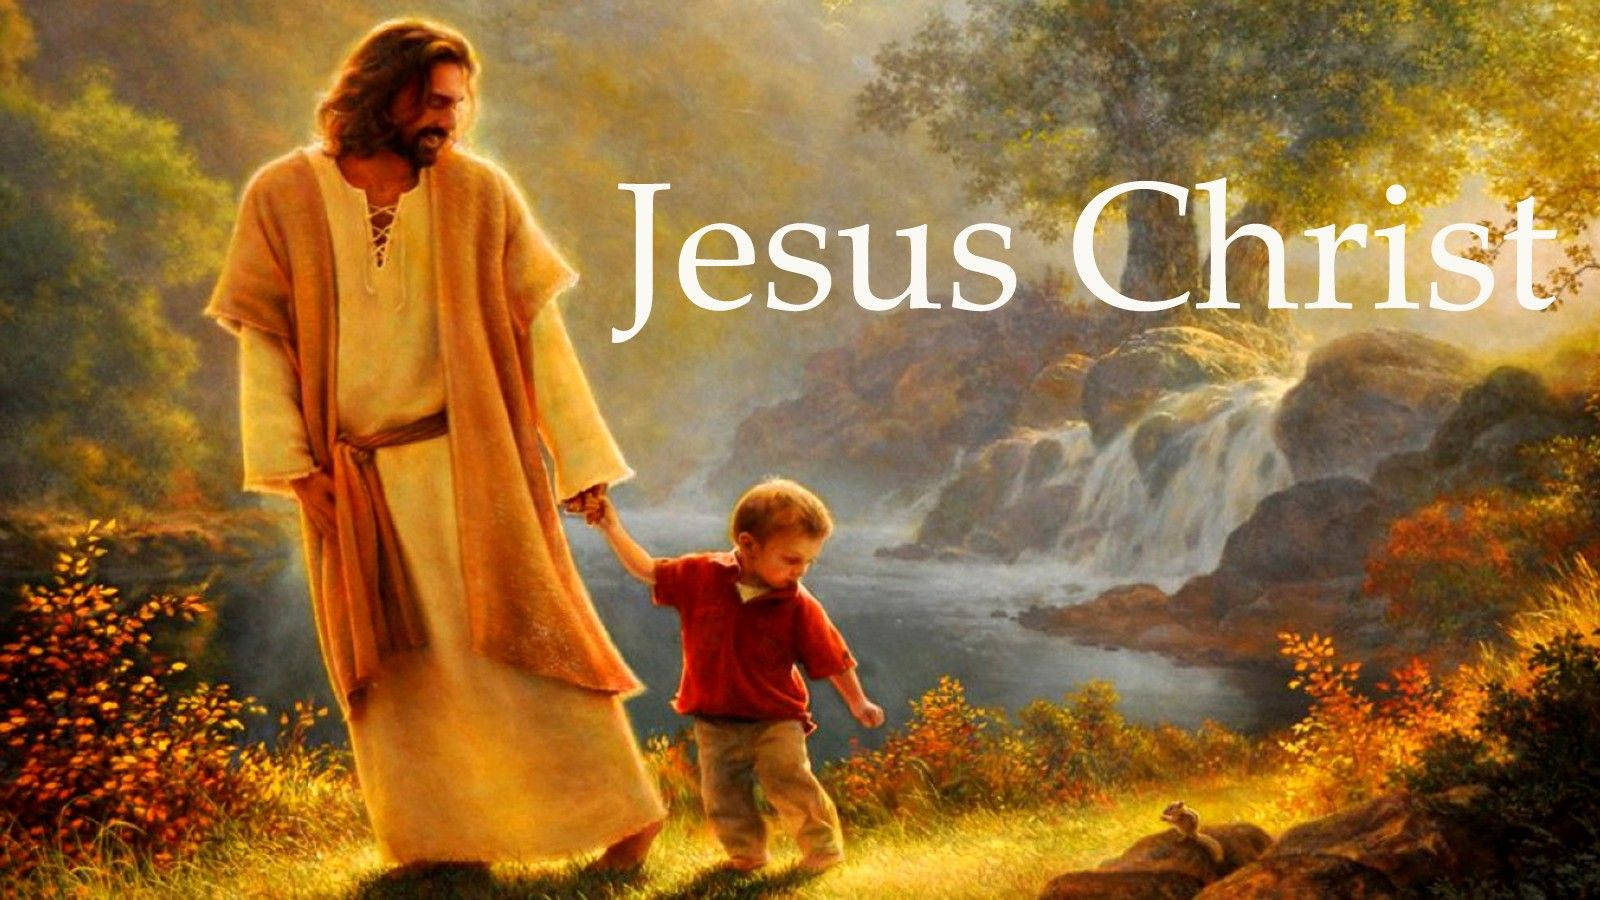 Jesusführt Ein Junges Kind Auf Den Weg Zur Gerechtigkeit. Wallpaper